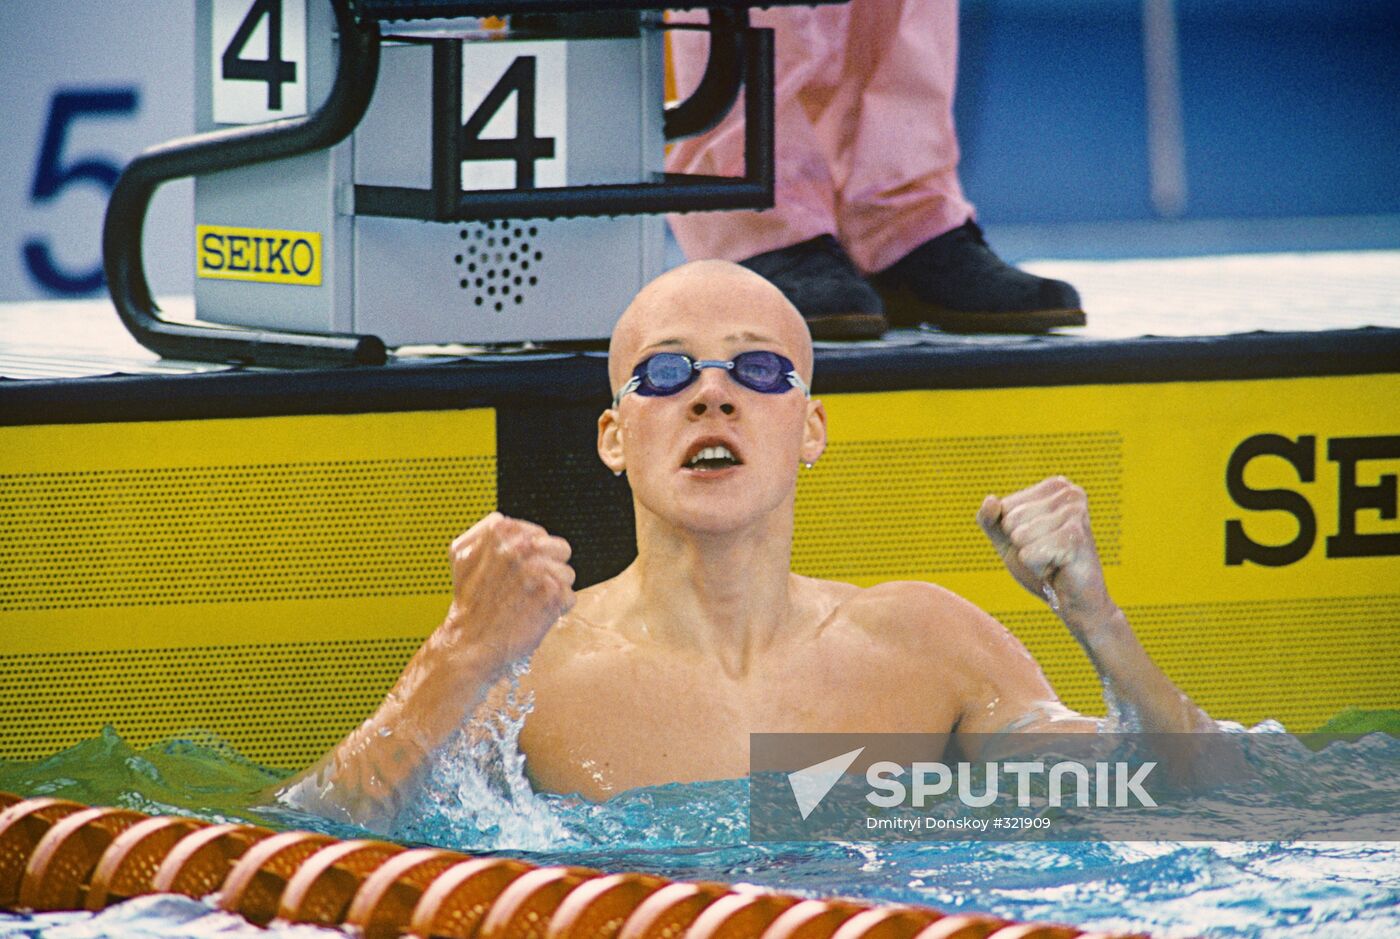 Swimmer Yevgeny Sadovy